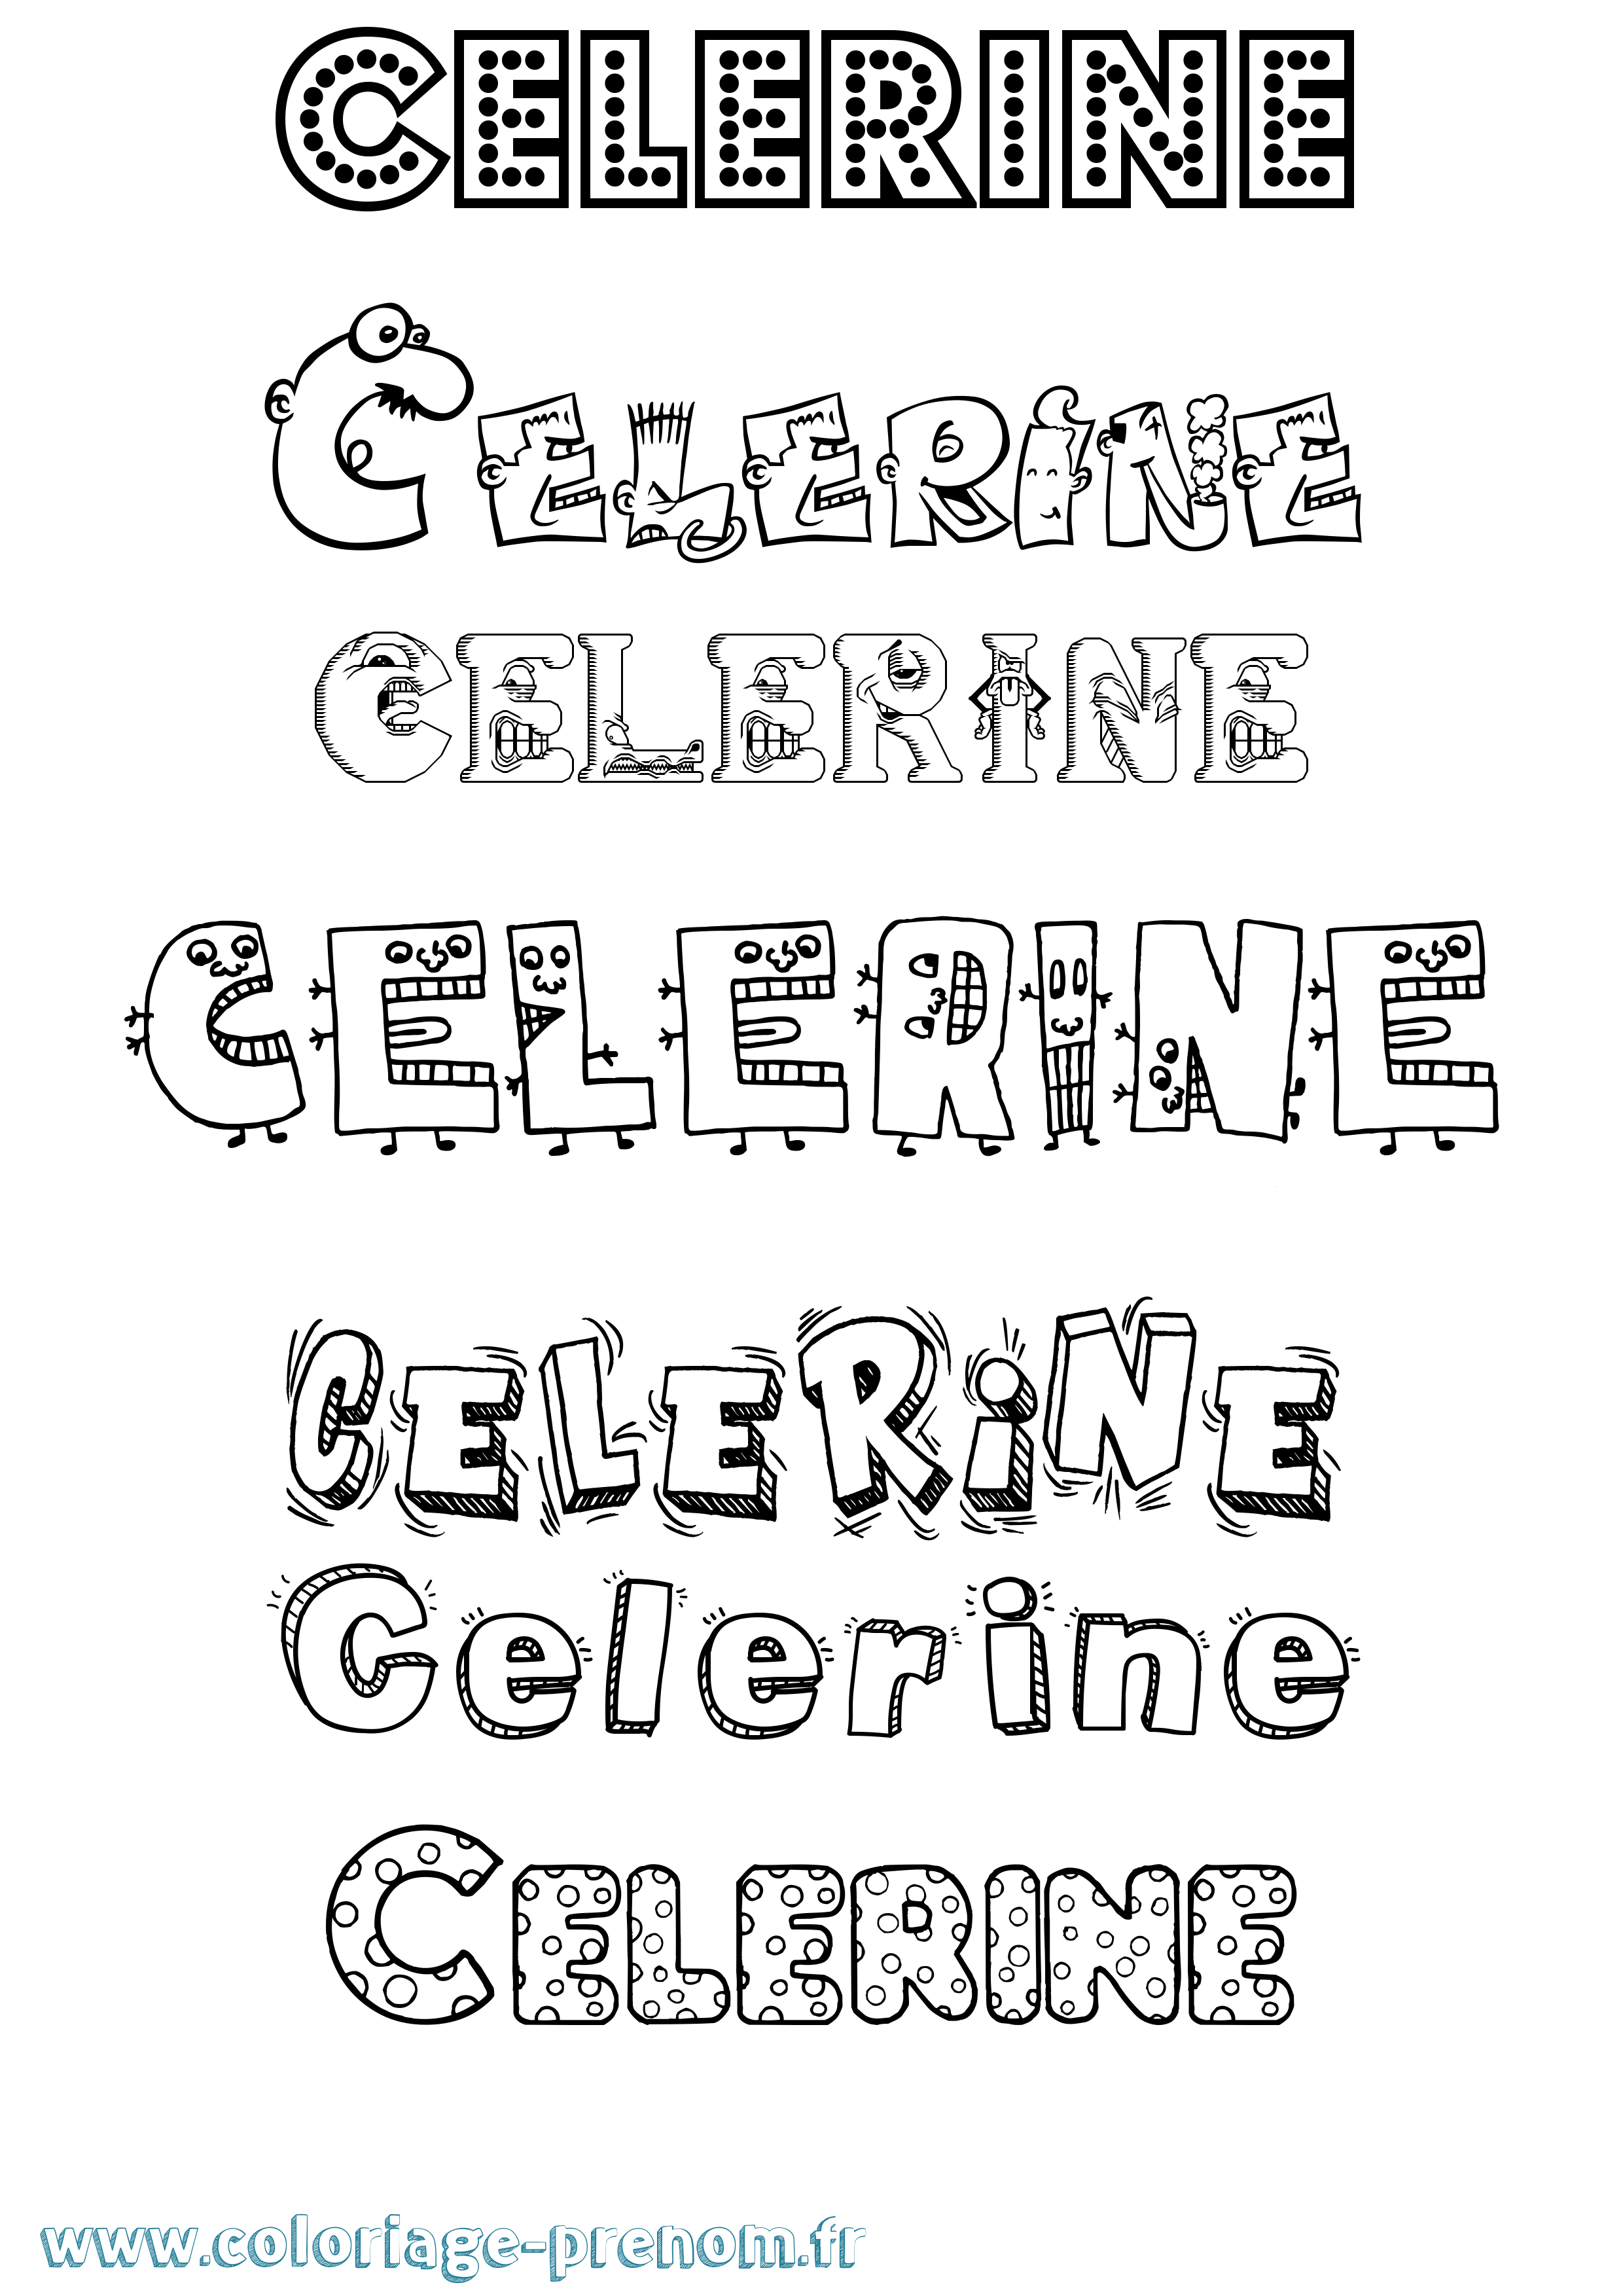 Coloriage prénom Celerine Fun